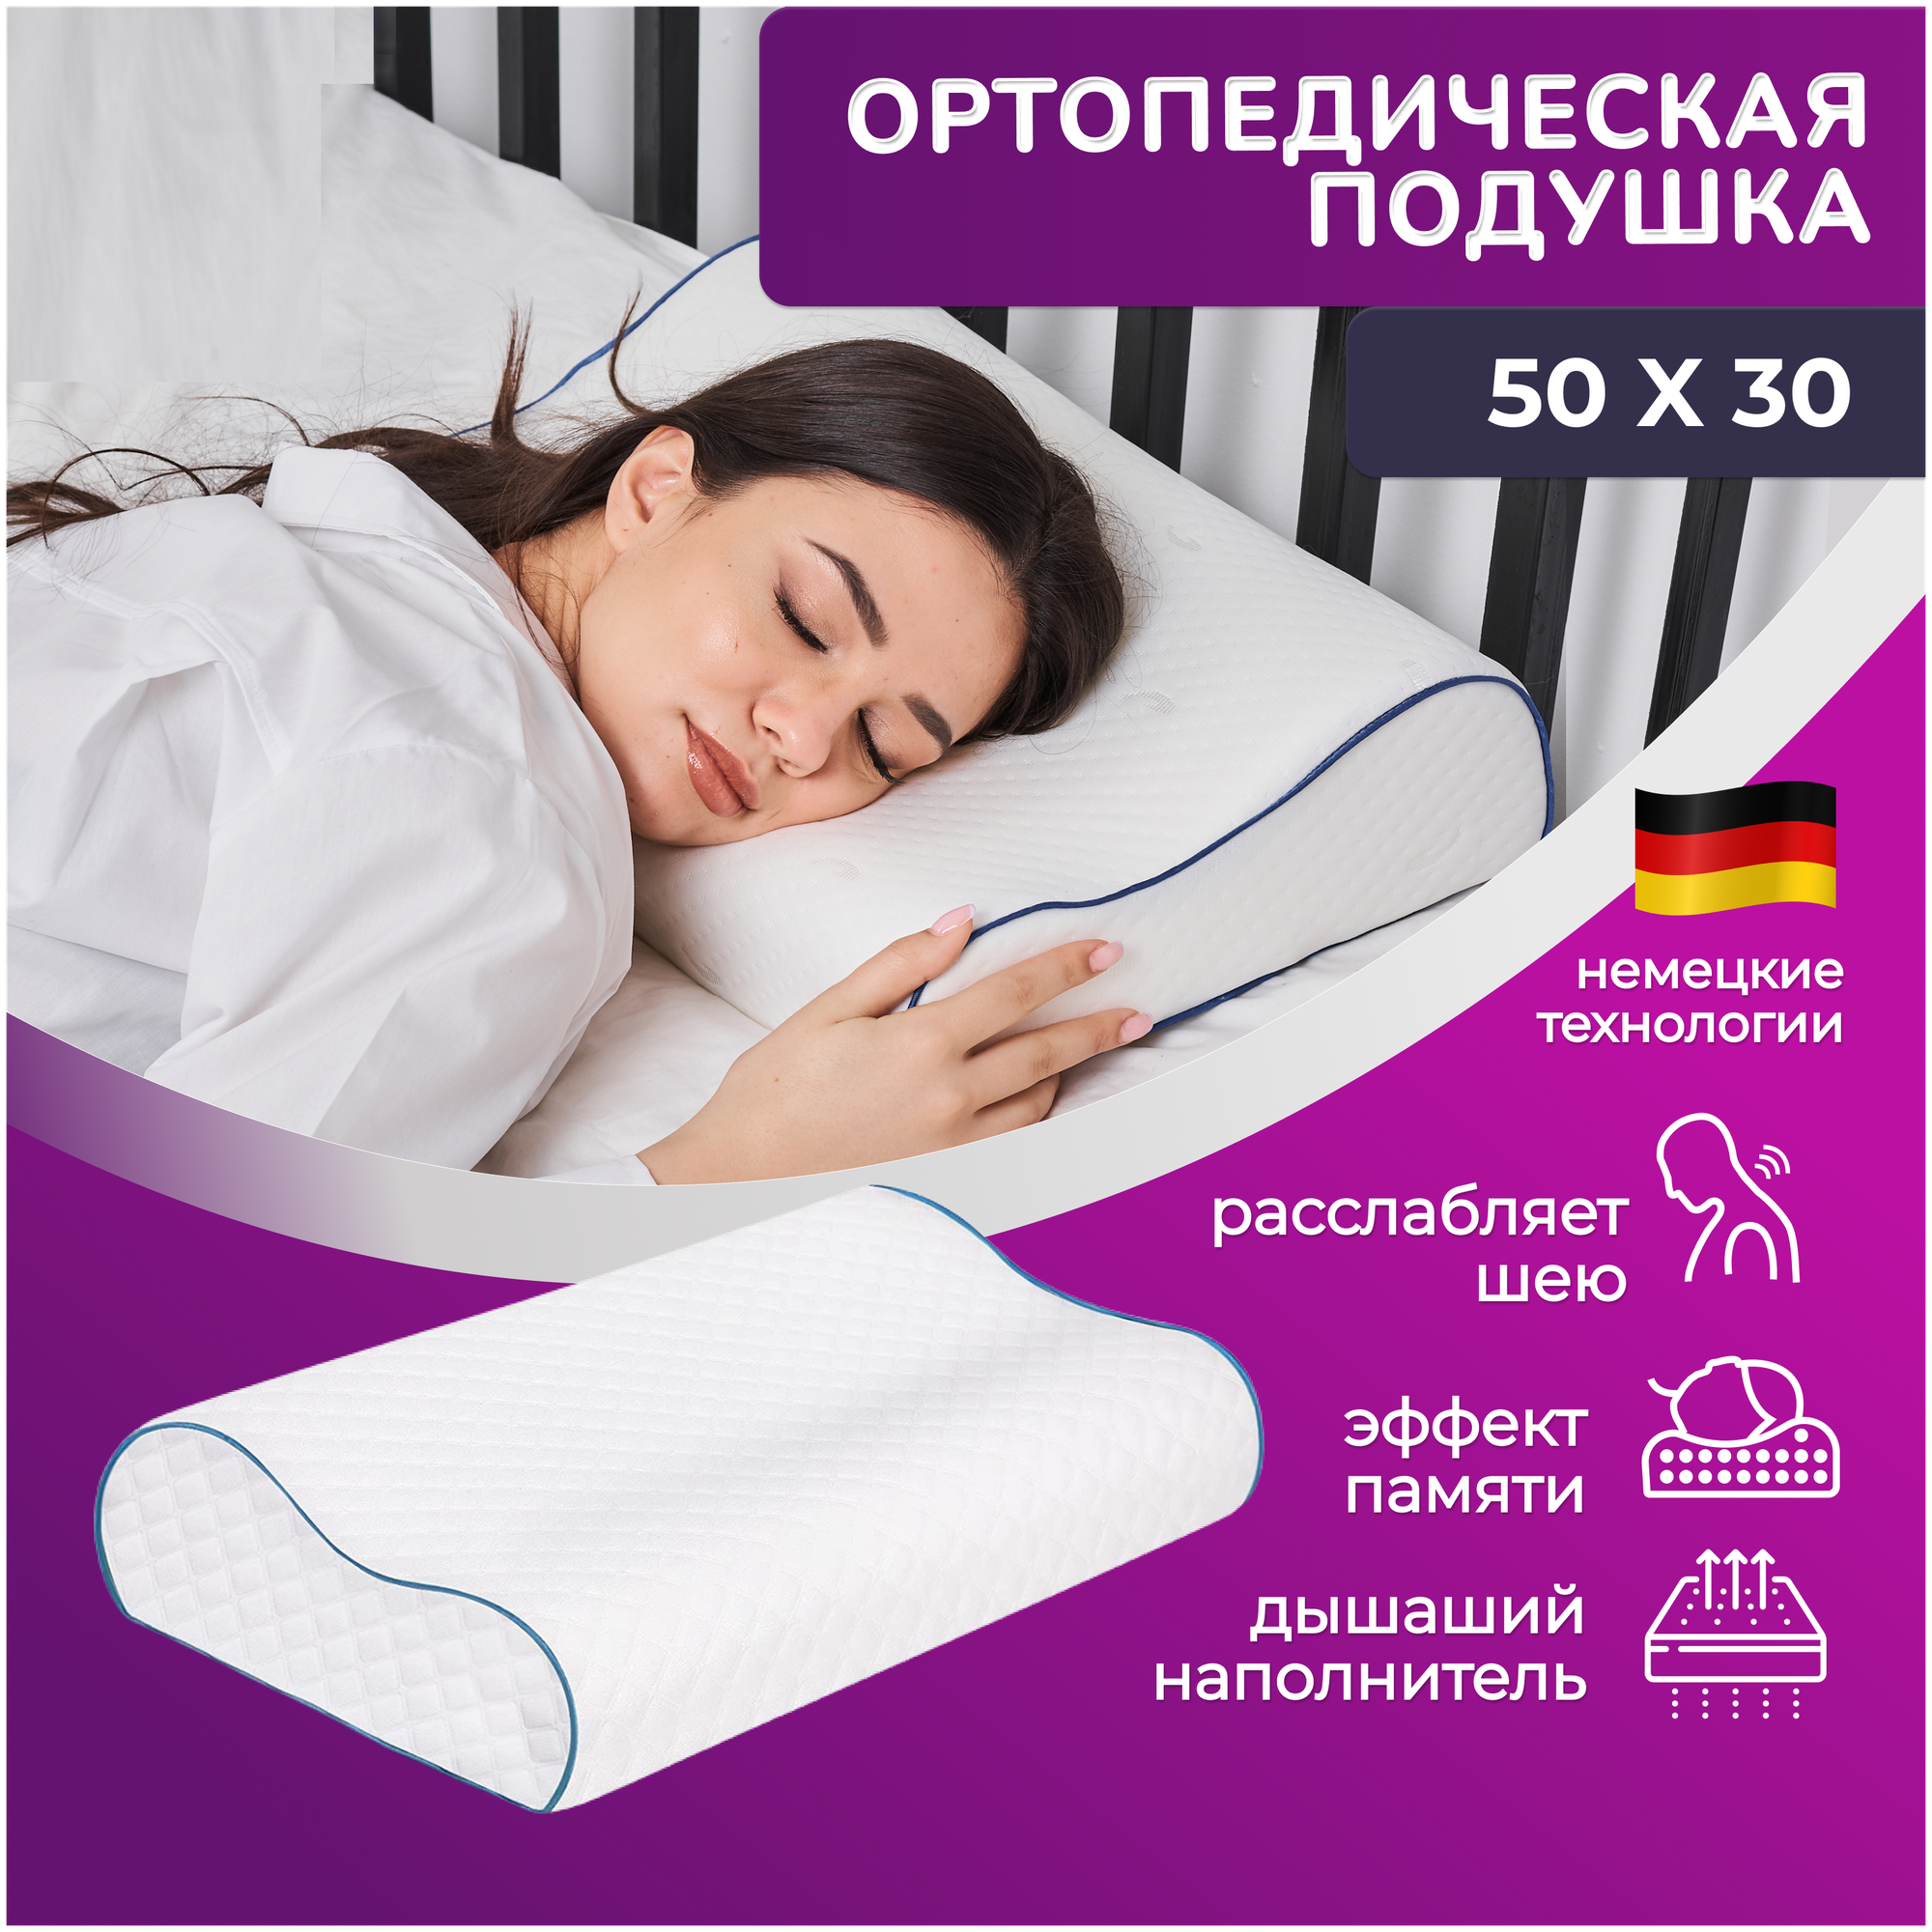 Подушка ортопедическая Wikkistyle 50х30 для сна и шеи с эффектом памяти два валика 8 и 11 см